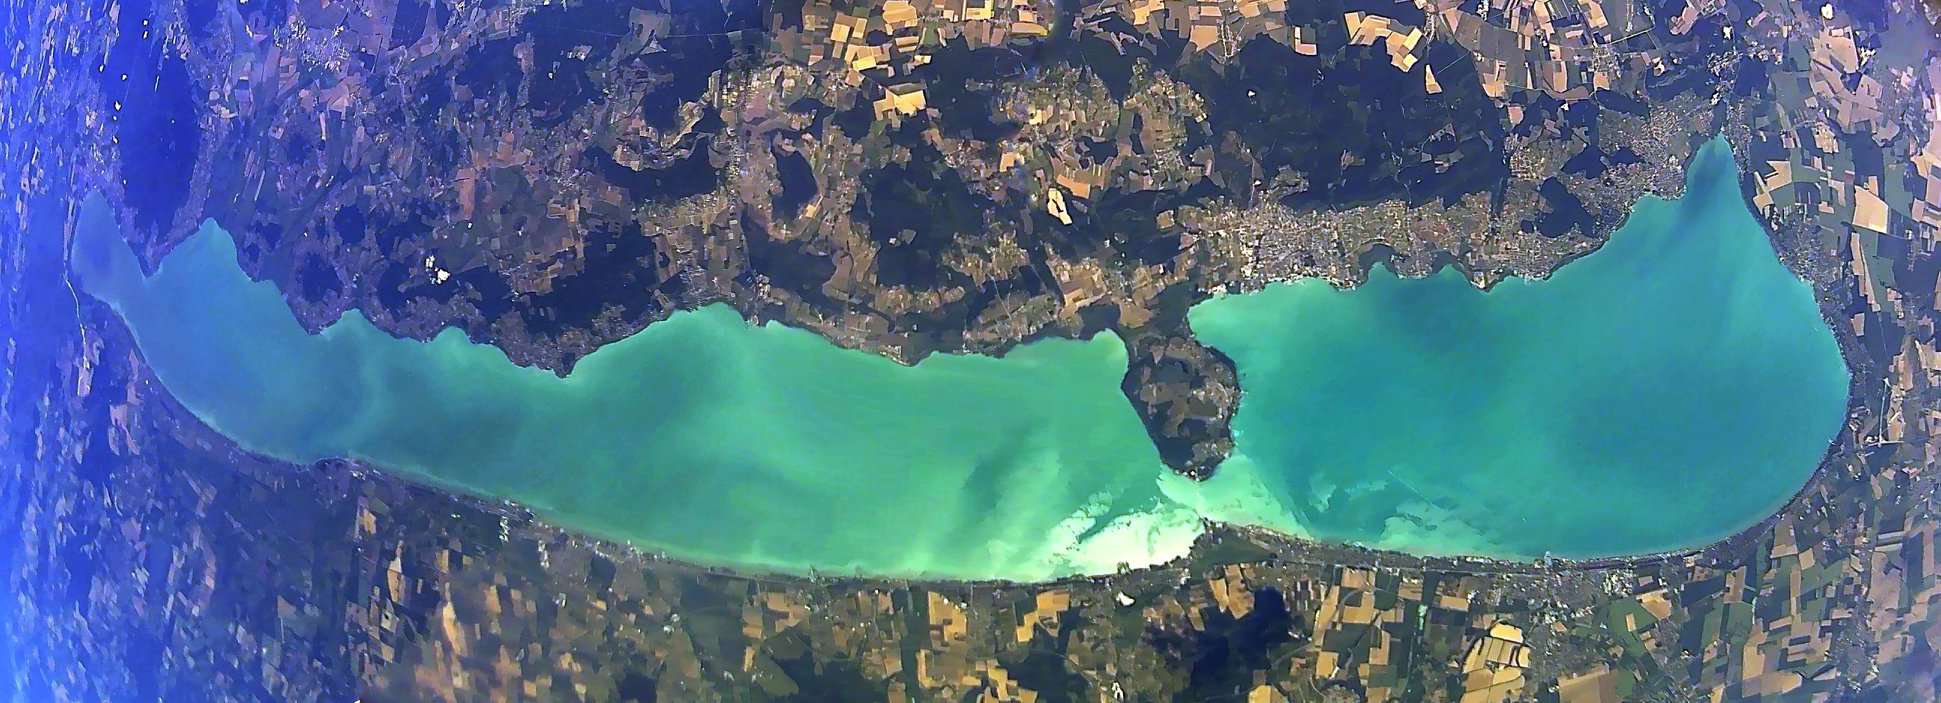 Озеро Балатон из космоса